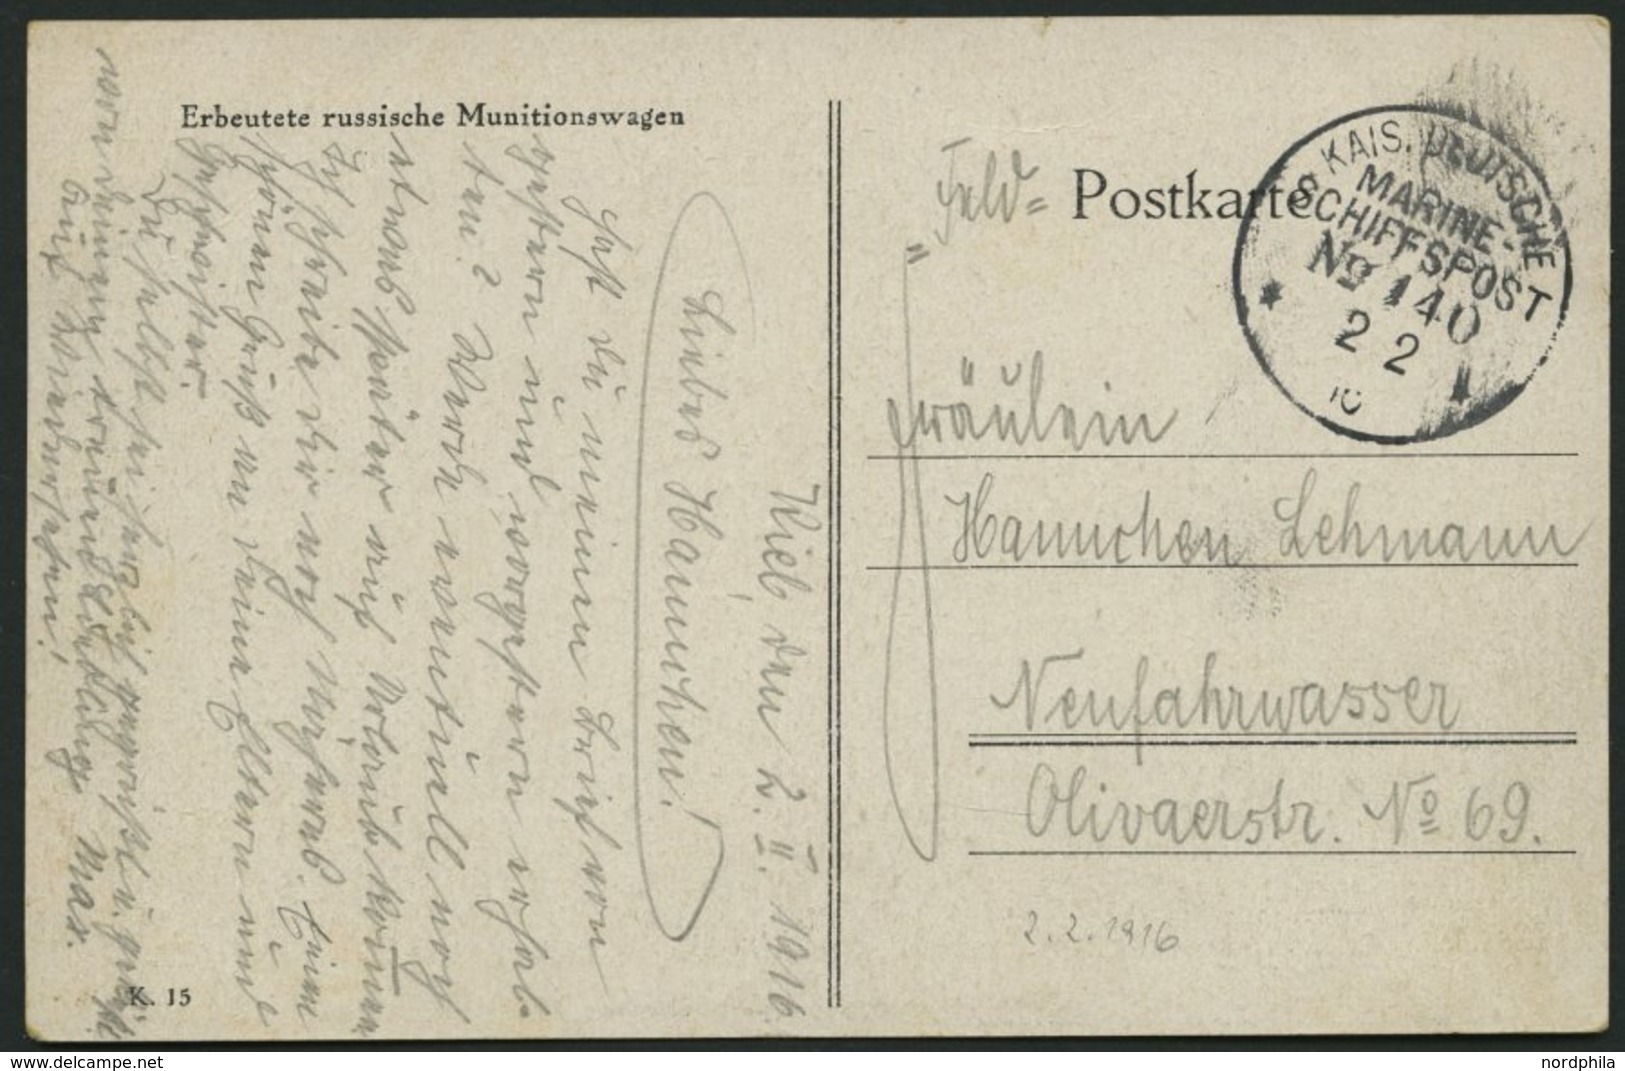 MSP VON 1914 - 1918 140 (Großer Kreuzer ROON), 2.2.1916, Feldpost-Ansichtskarte Von Bord Der Roon, Pracht - Maritime